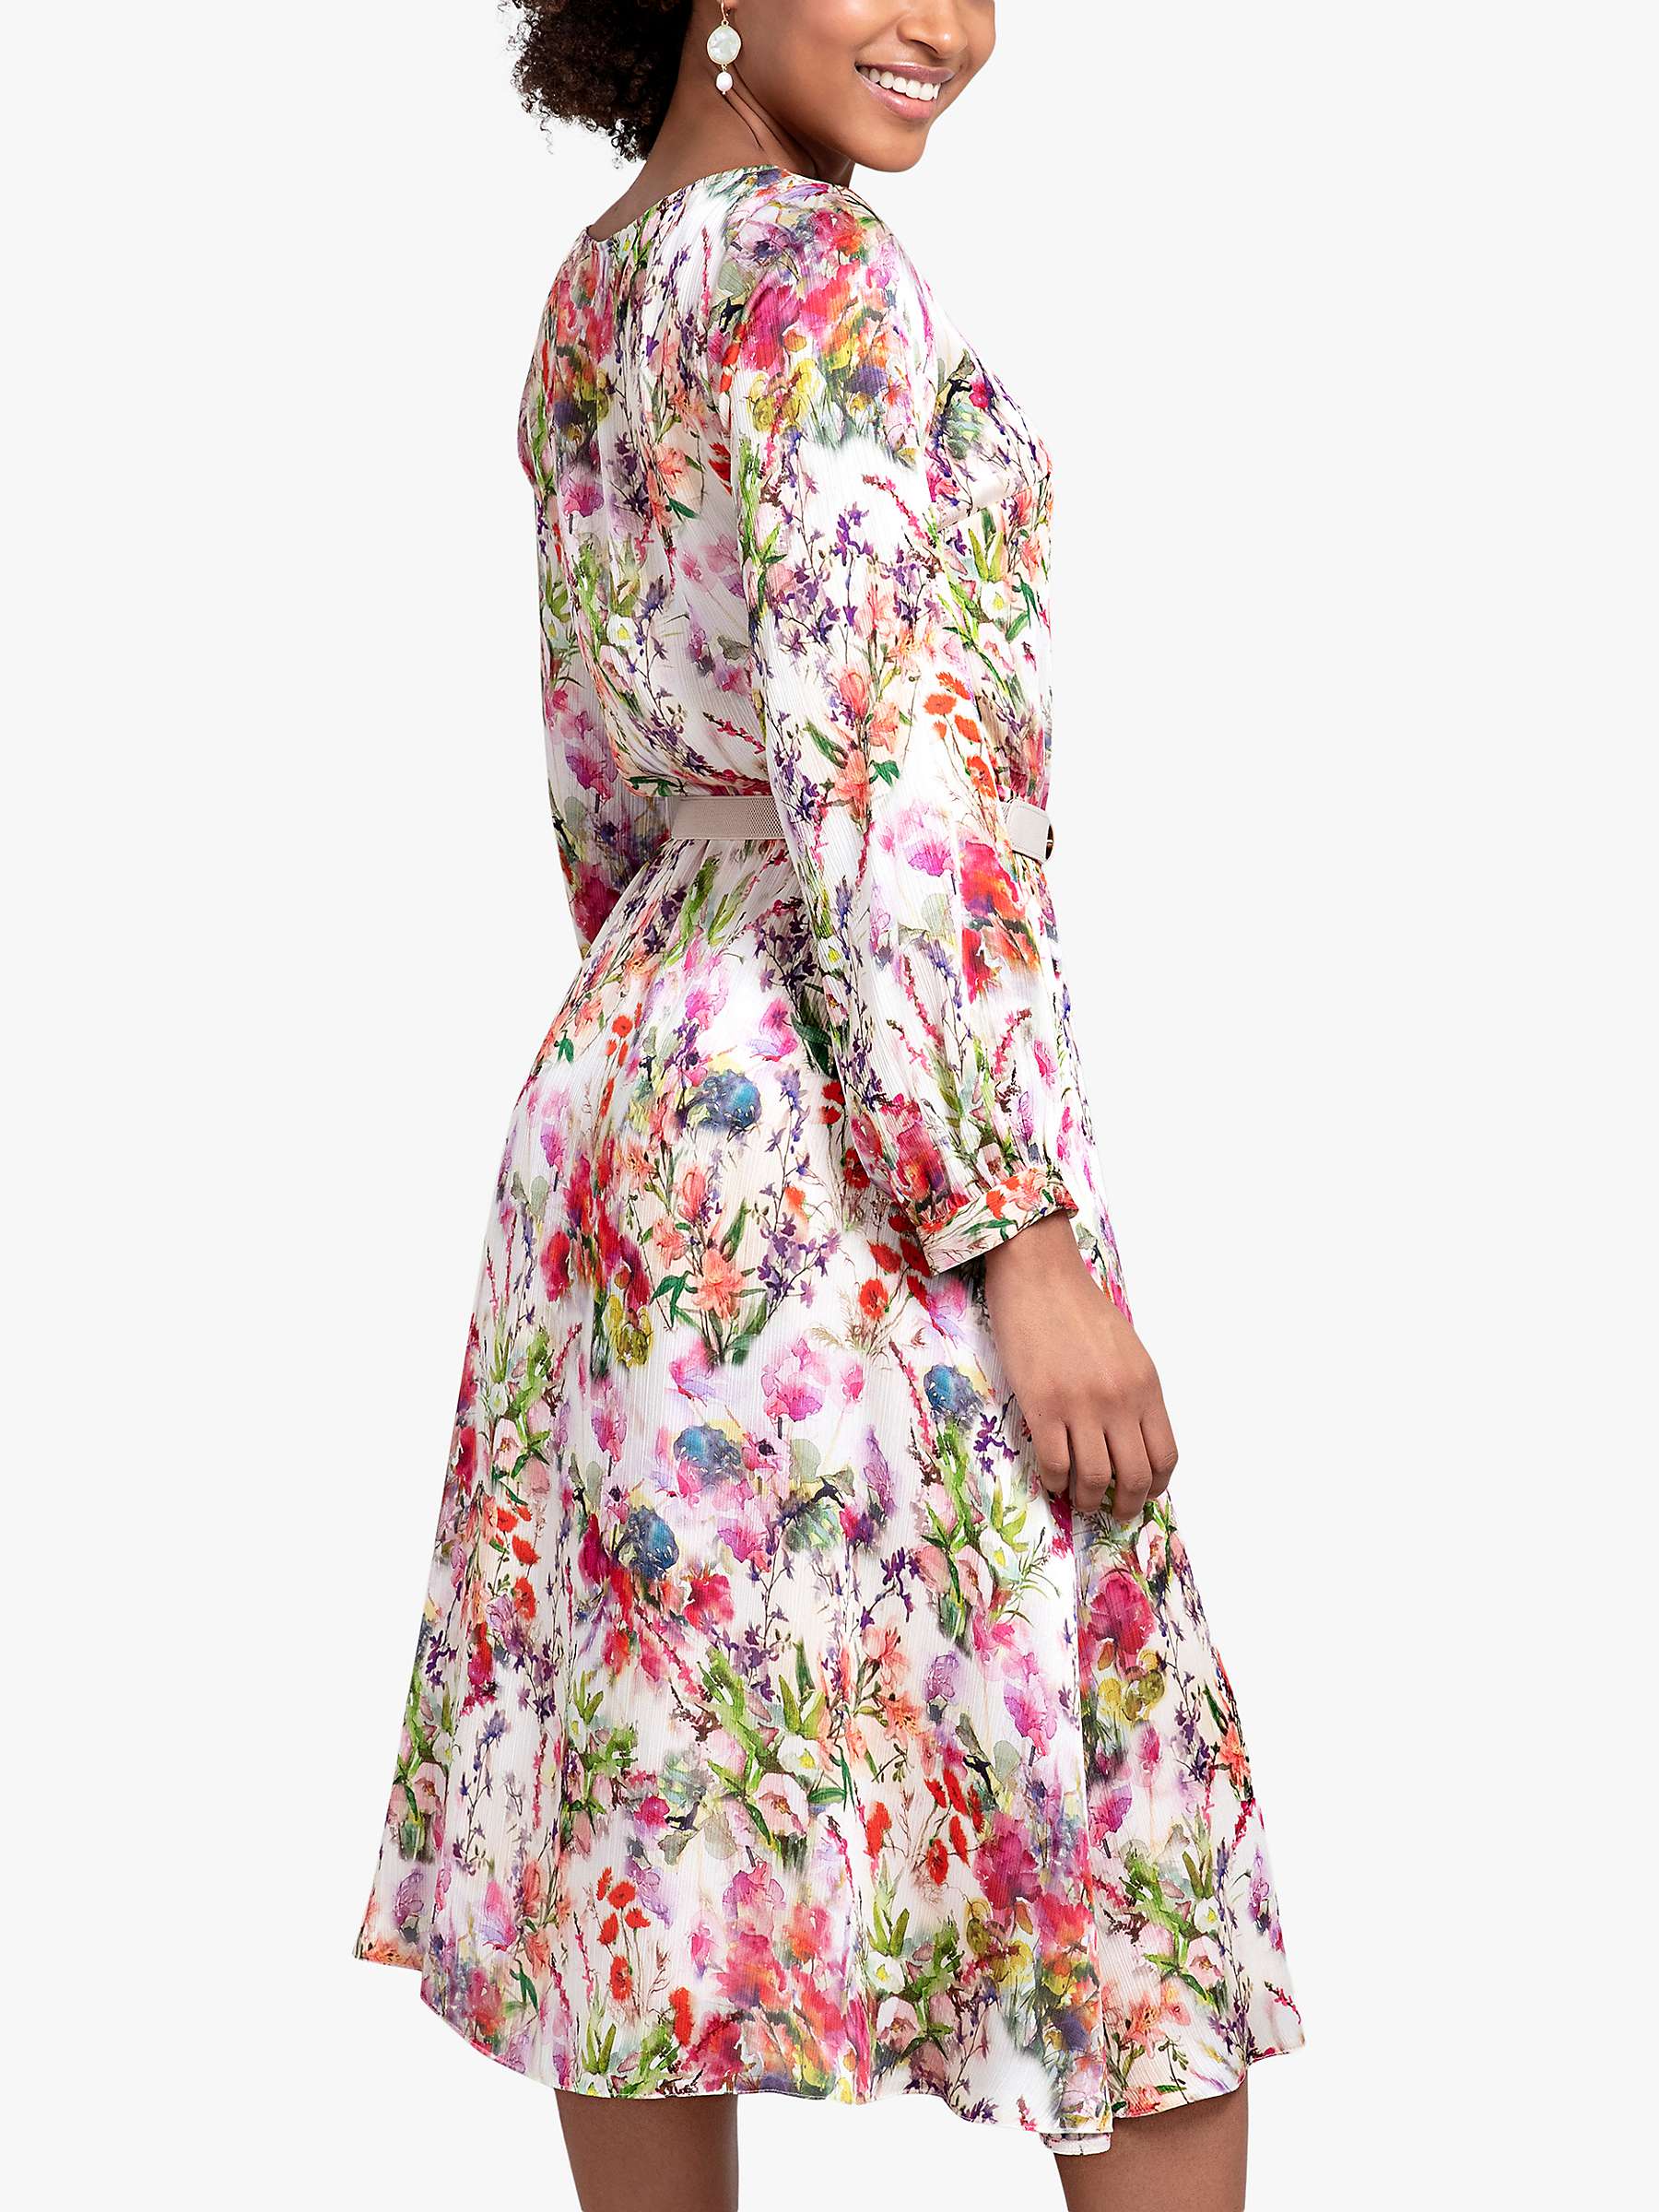 Buy Alie Street Floral Marissa Dress, Wildflower Garden Online at johnlewis.com